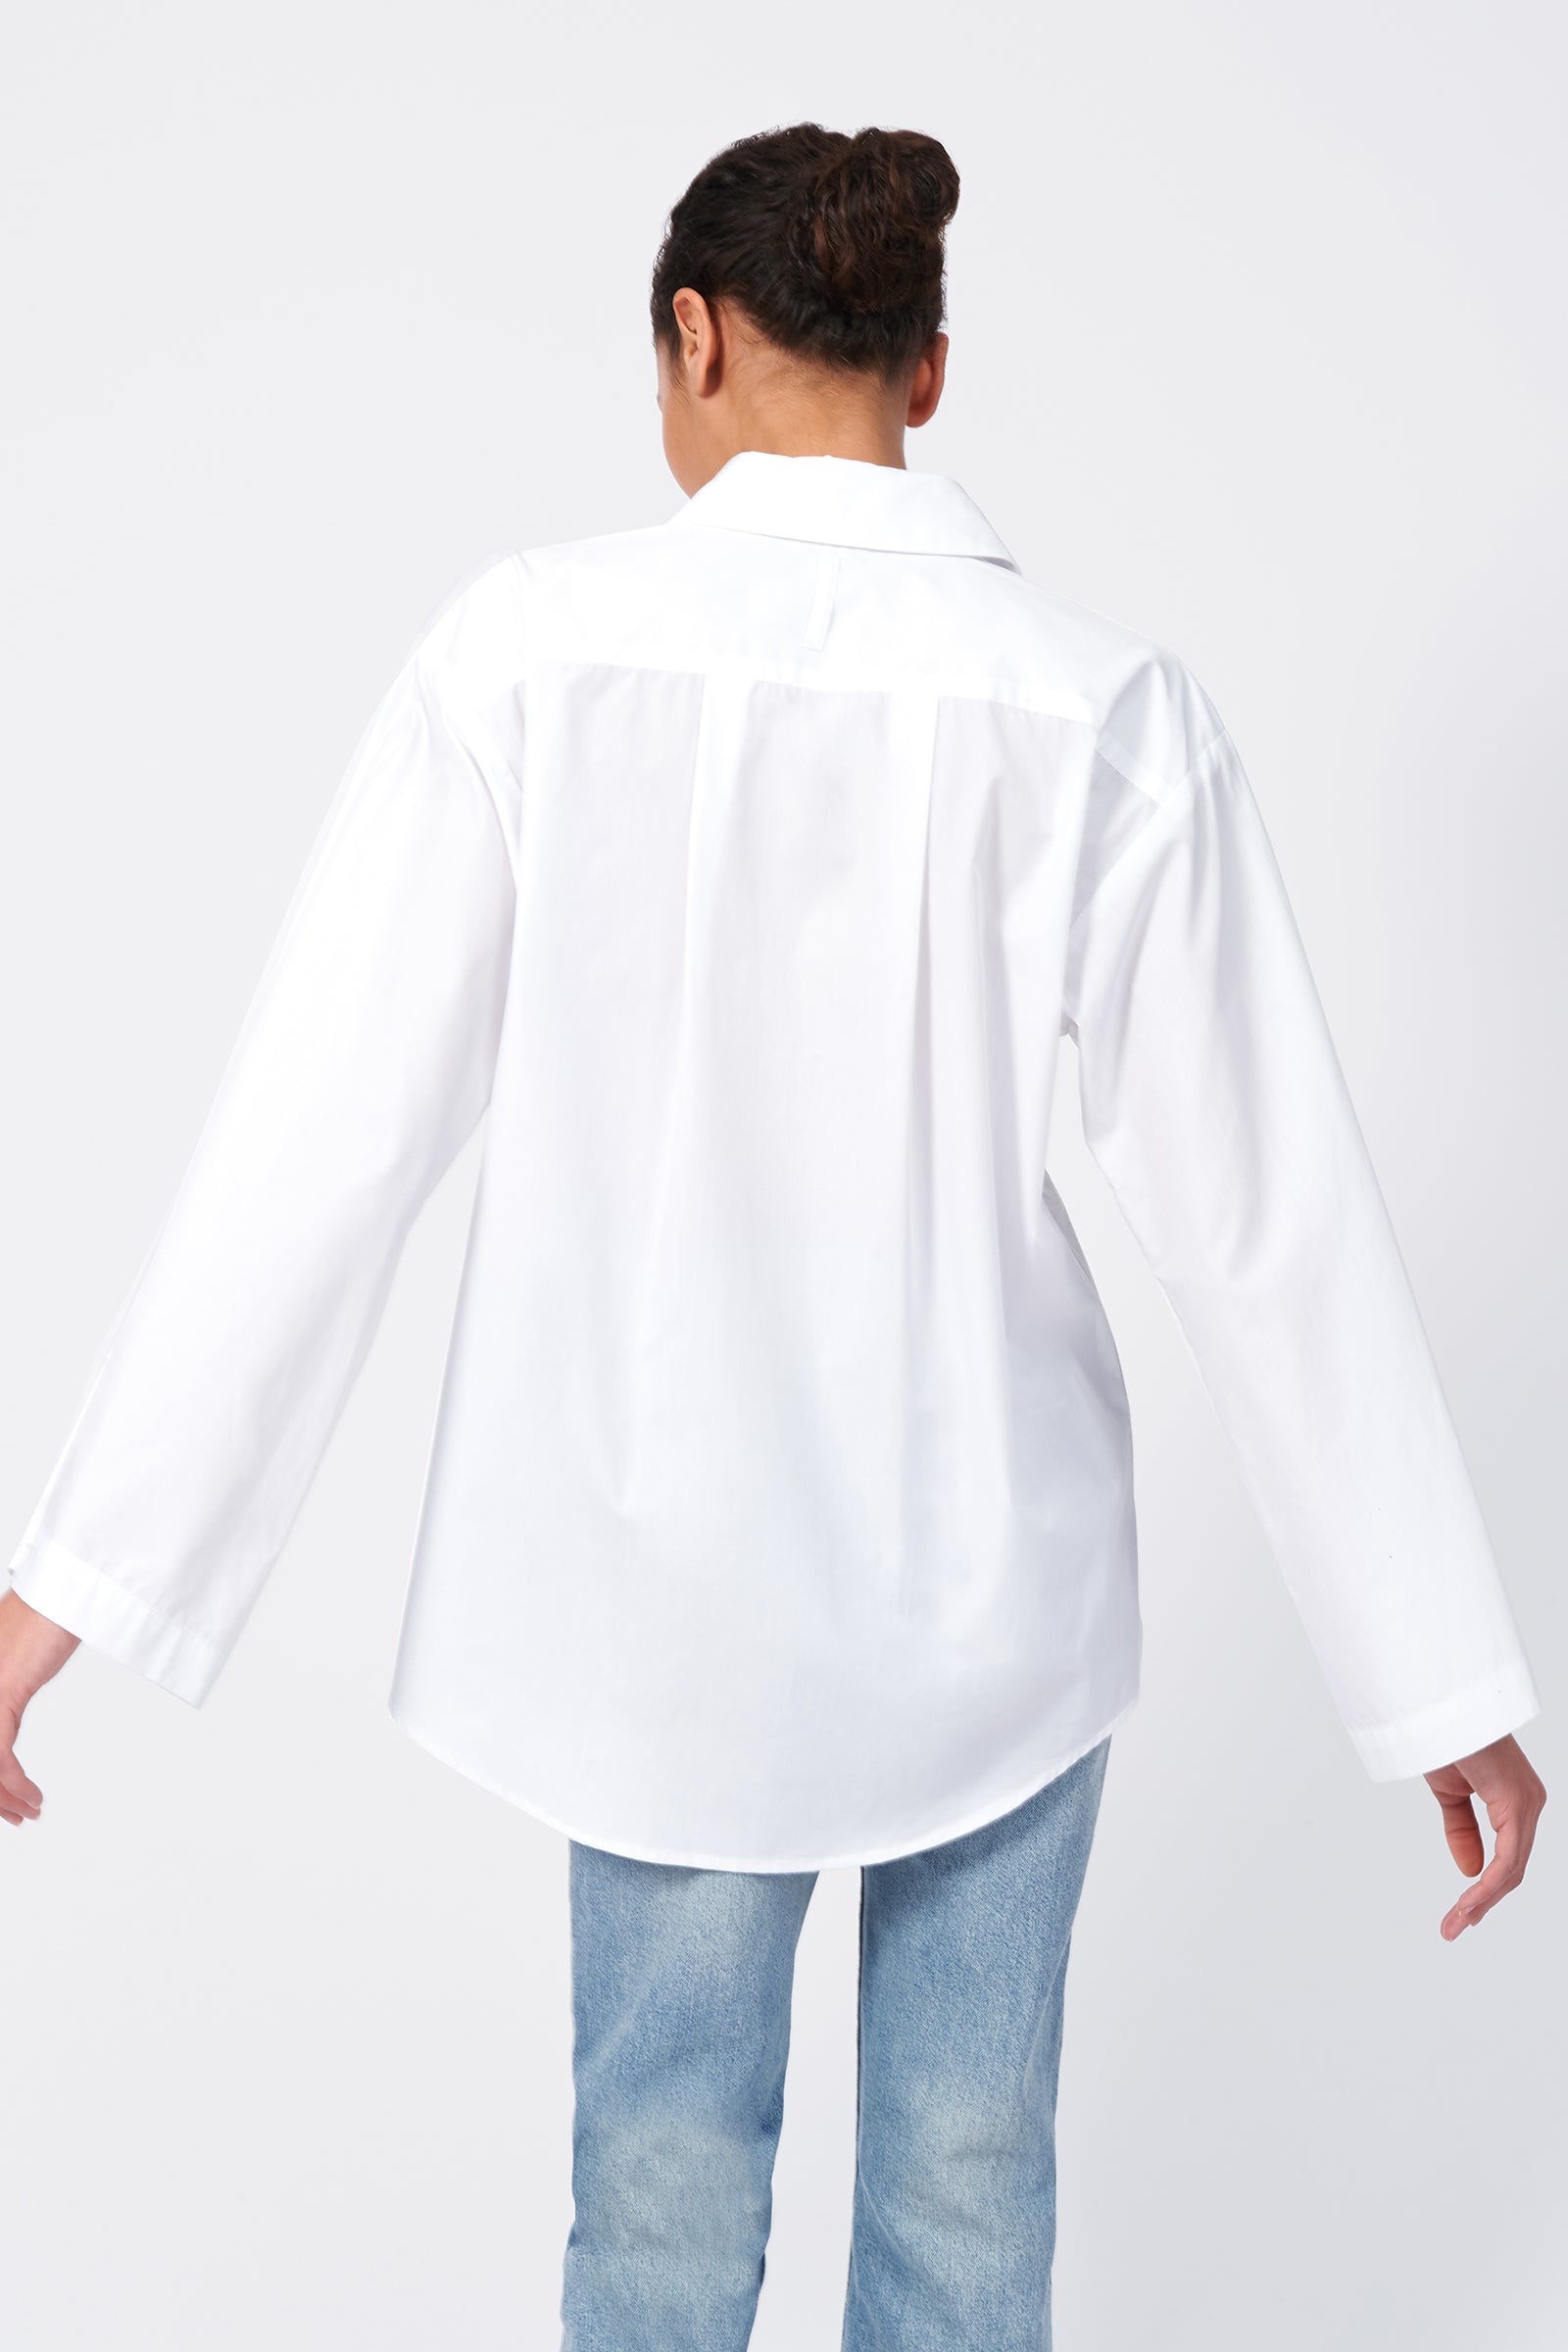 Kal Rieman Wide Sleeve Shirt in White Poplin on Model Back View